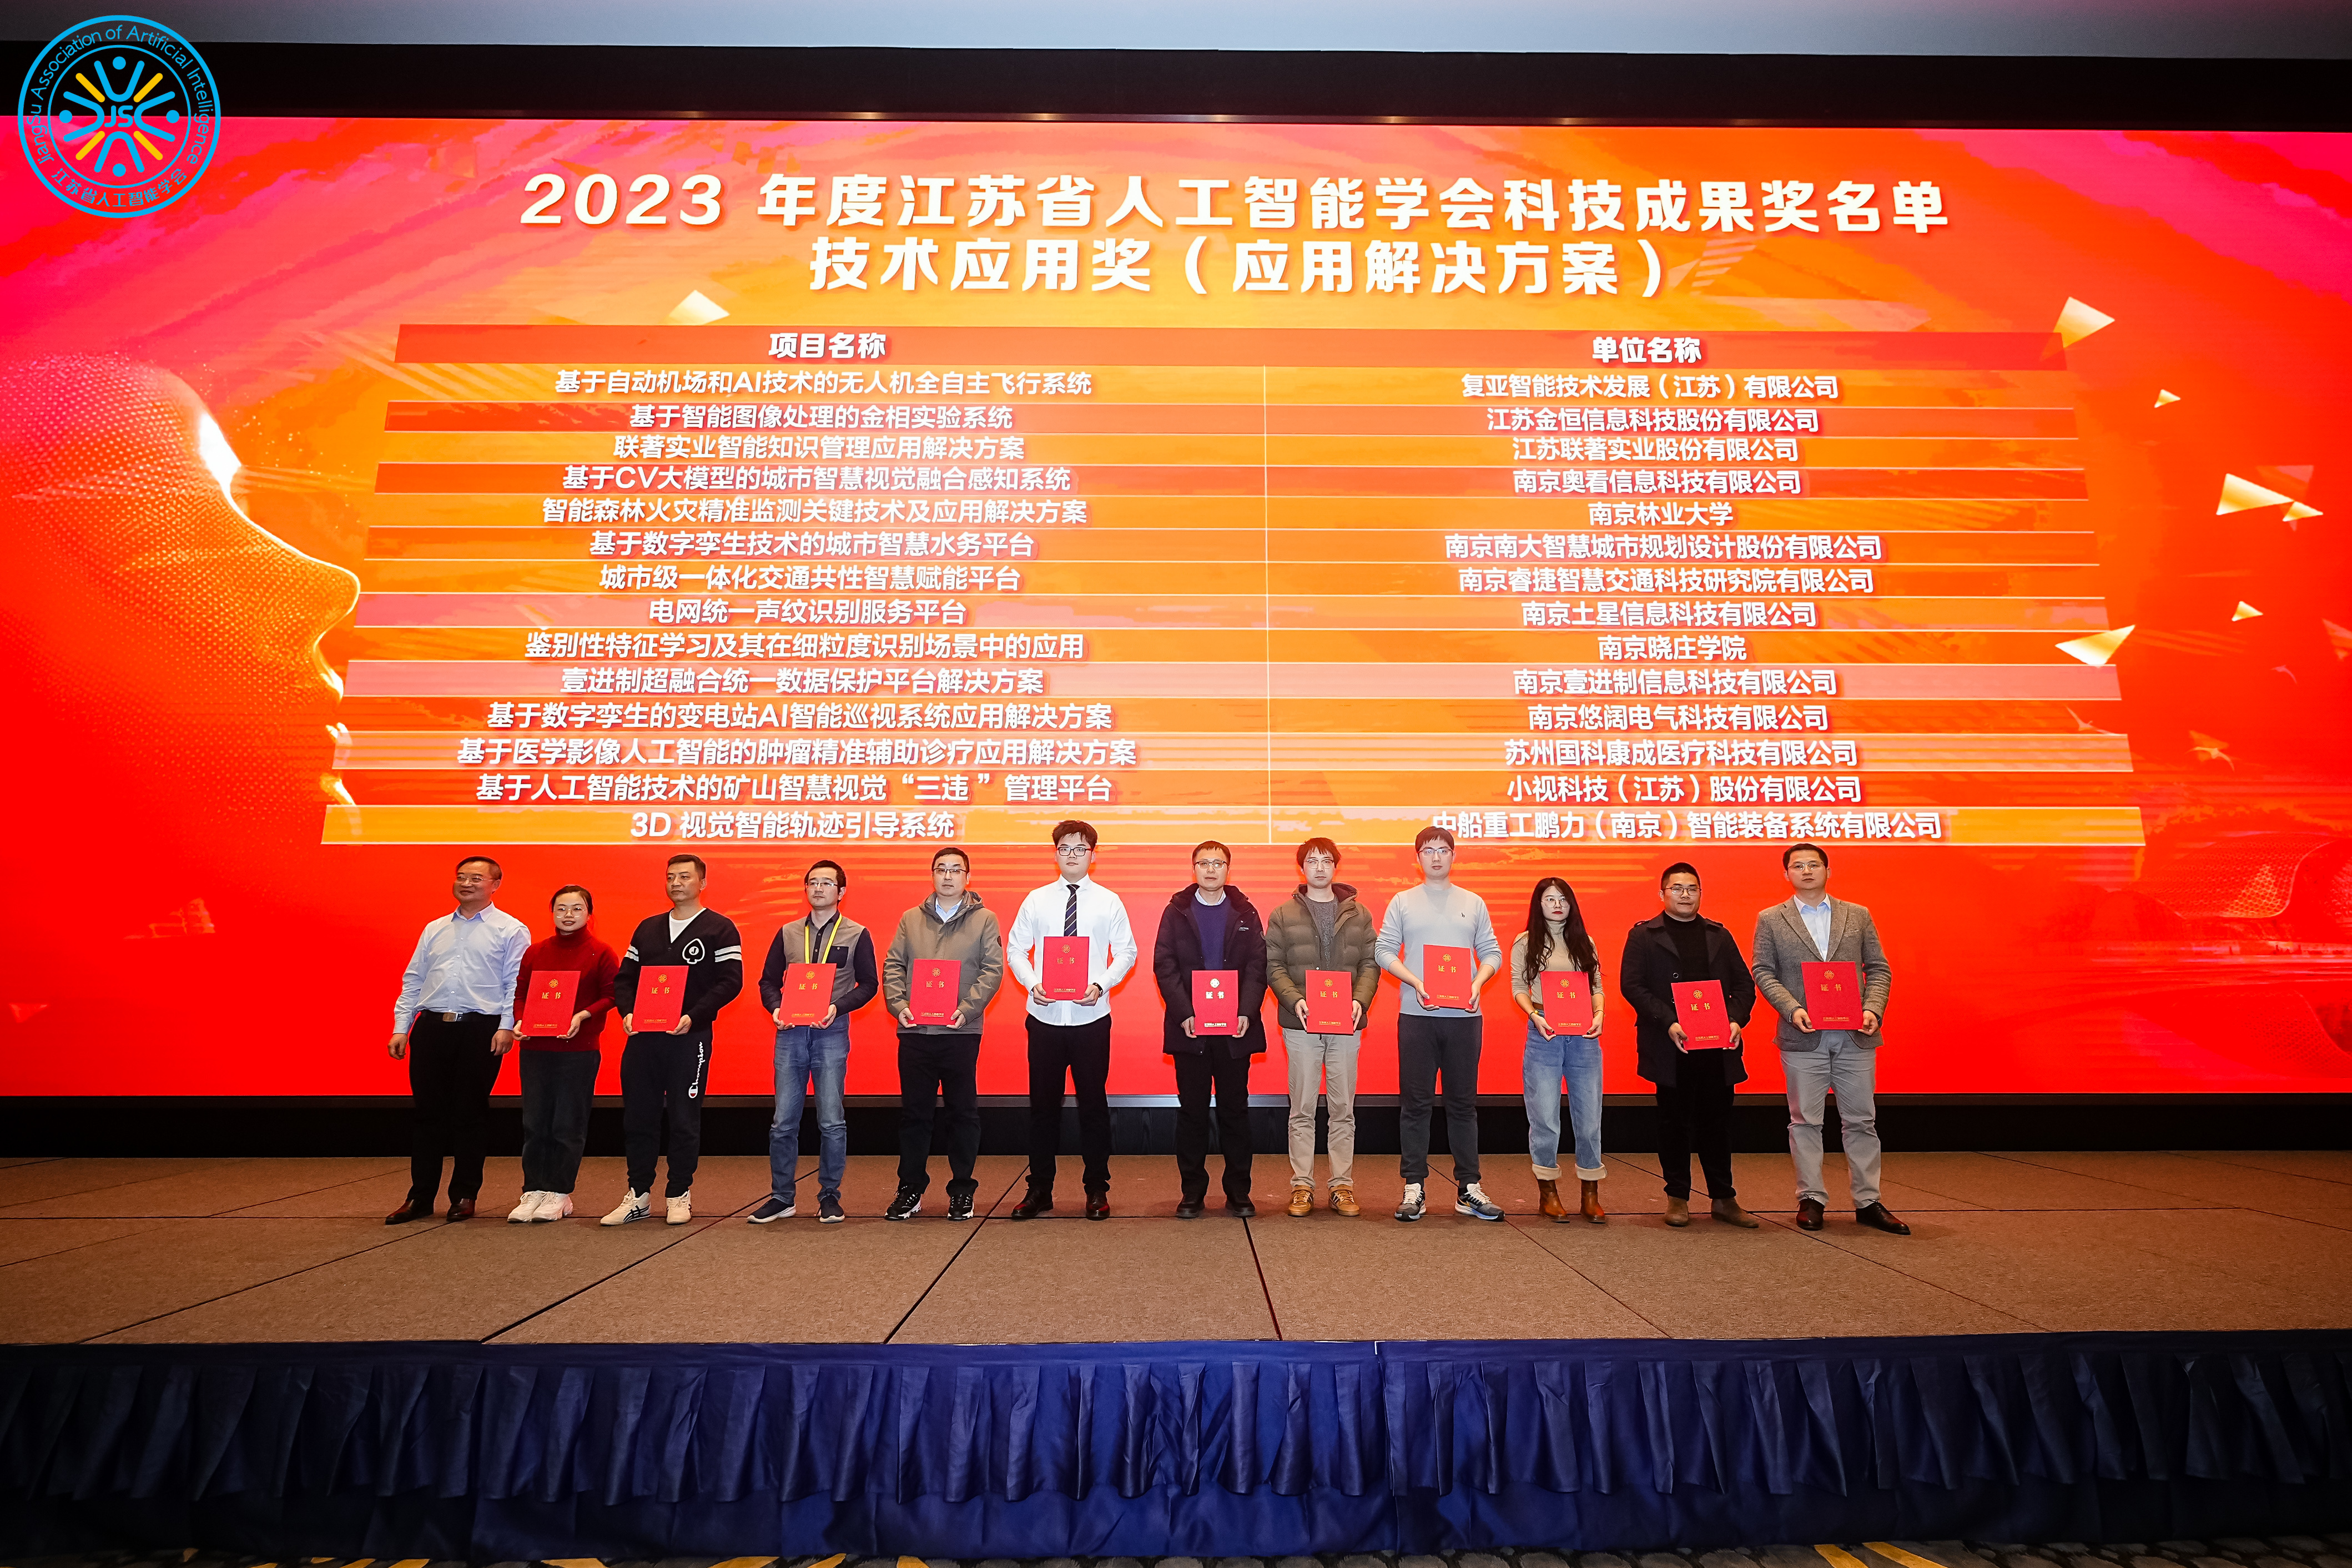 澳门威尼克斯人官网荣获“2023年度江苏省人工智能学会科学技术奖”